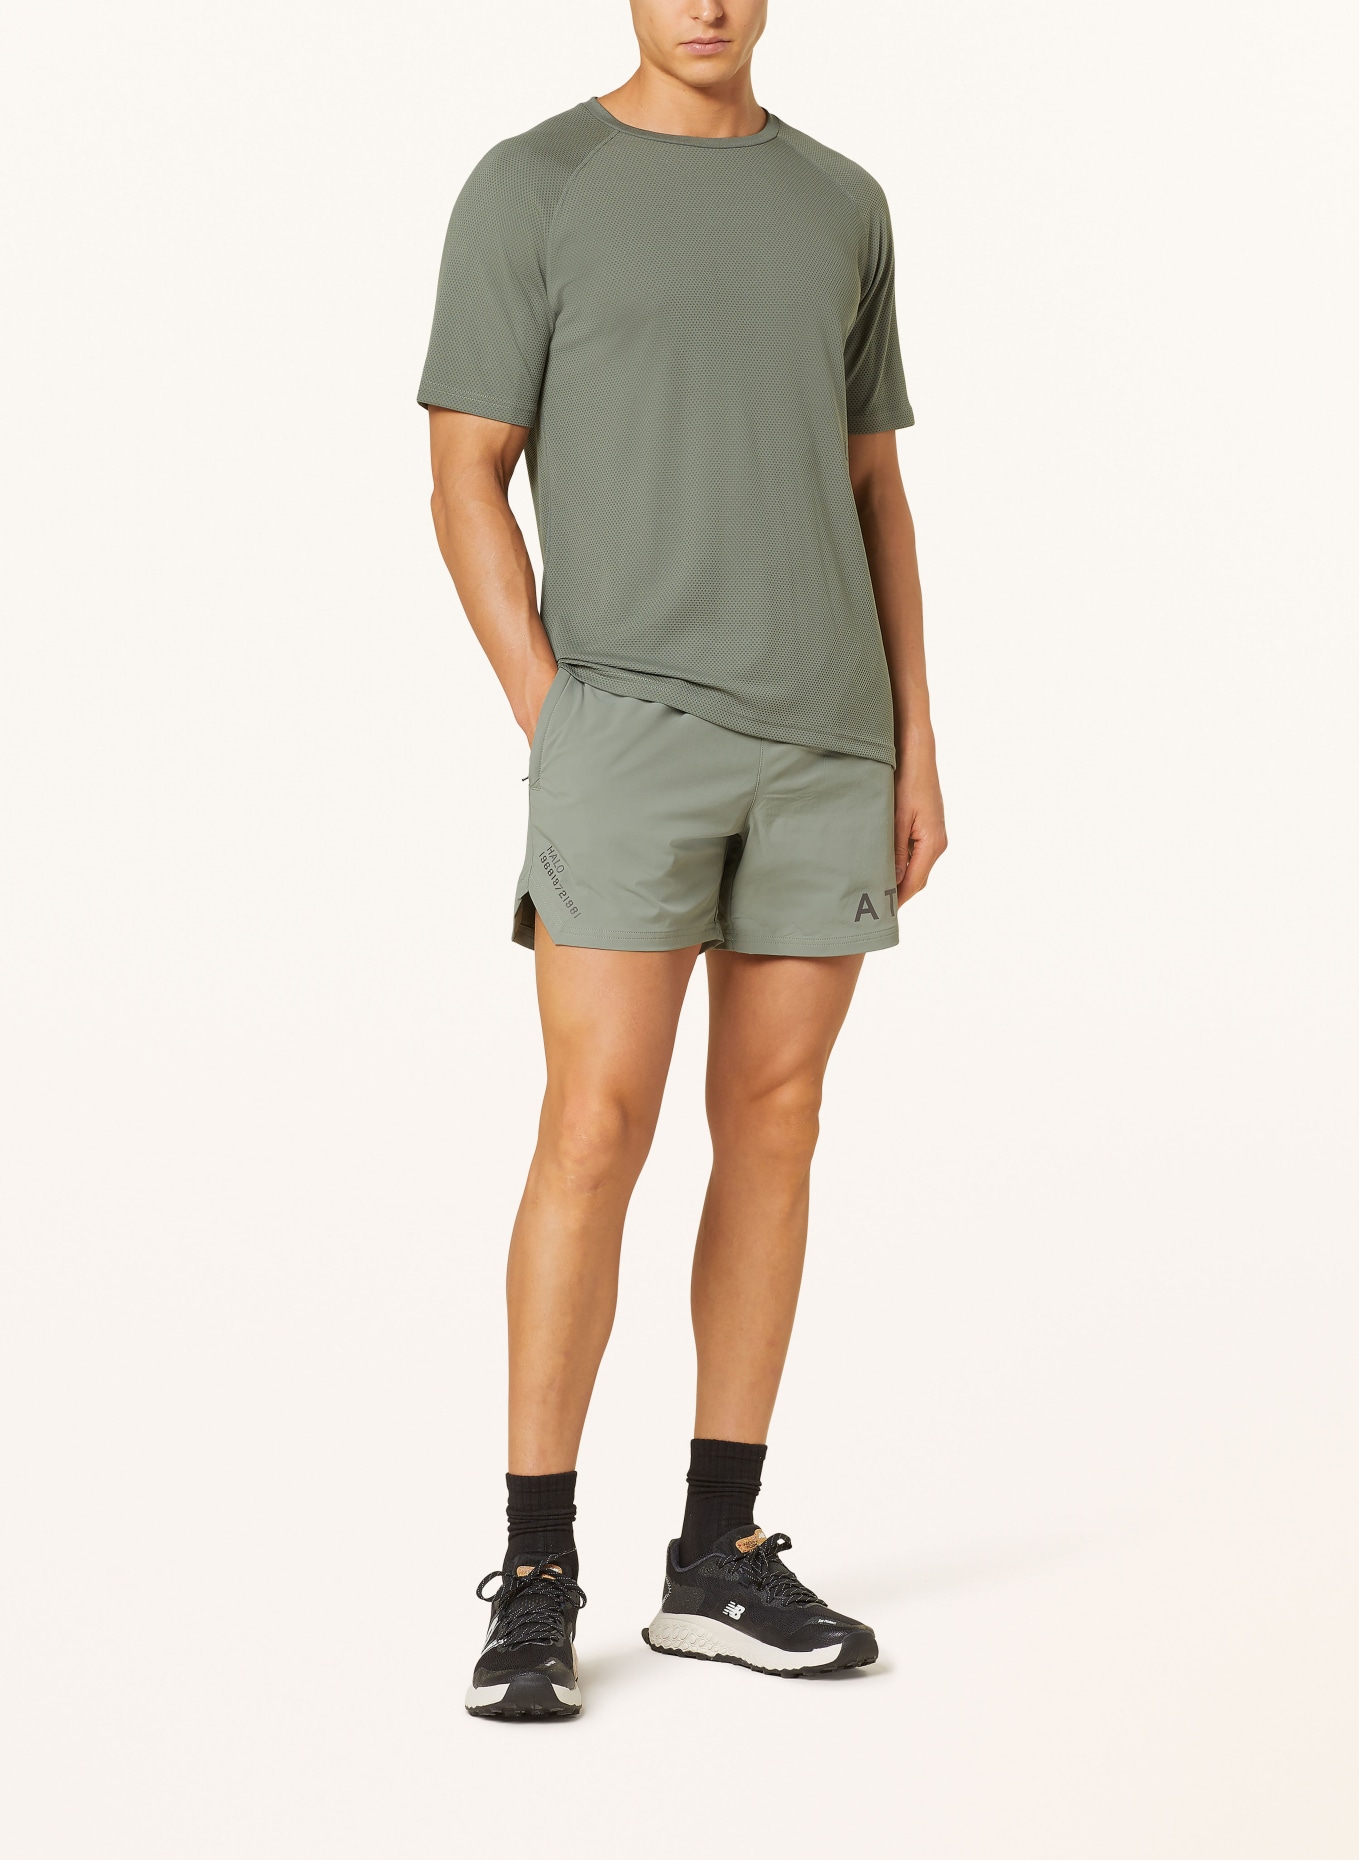 HALO Training shorts, Color: OLIVE (Image 2)